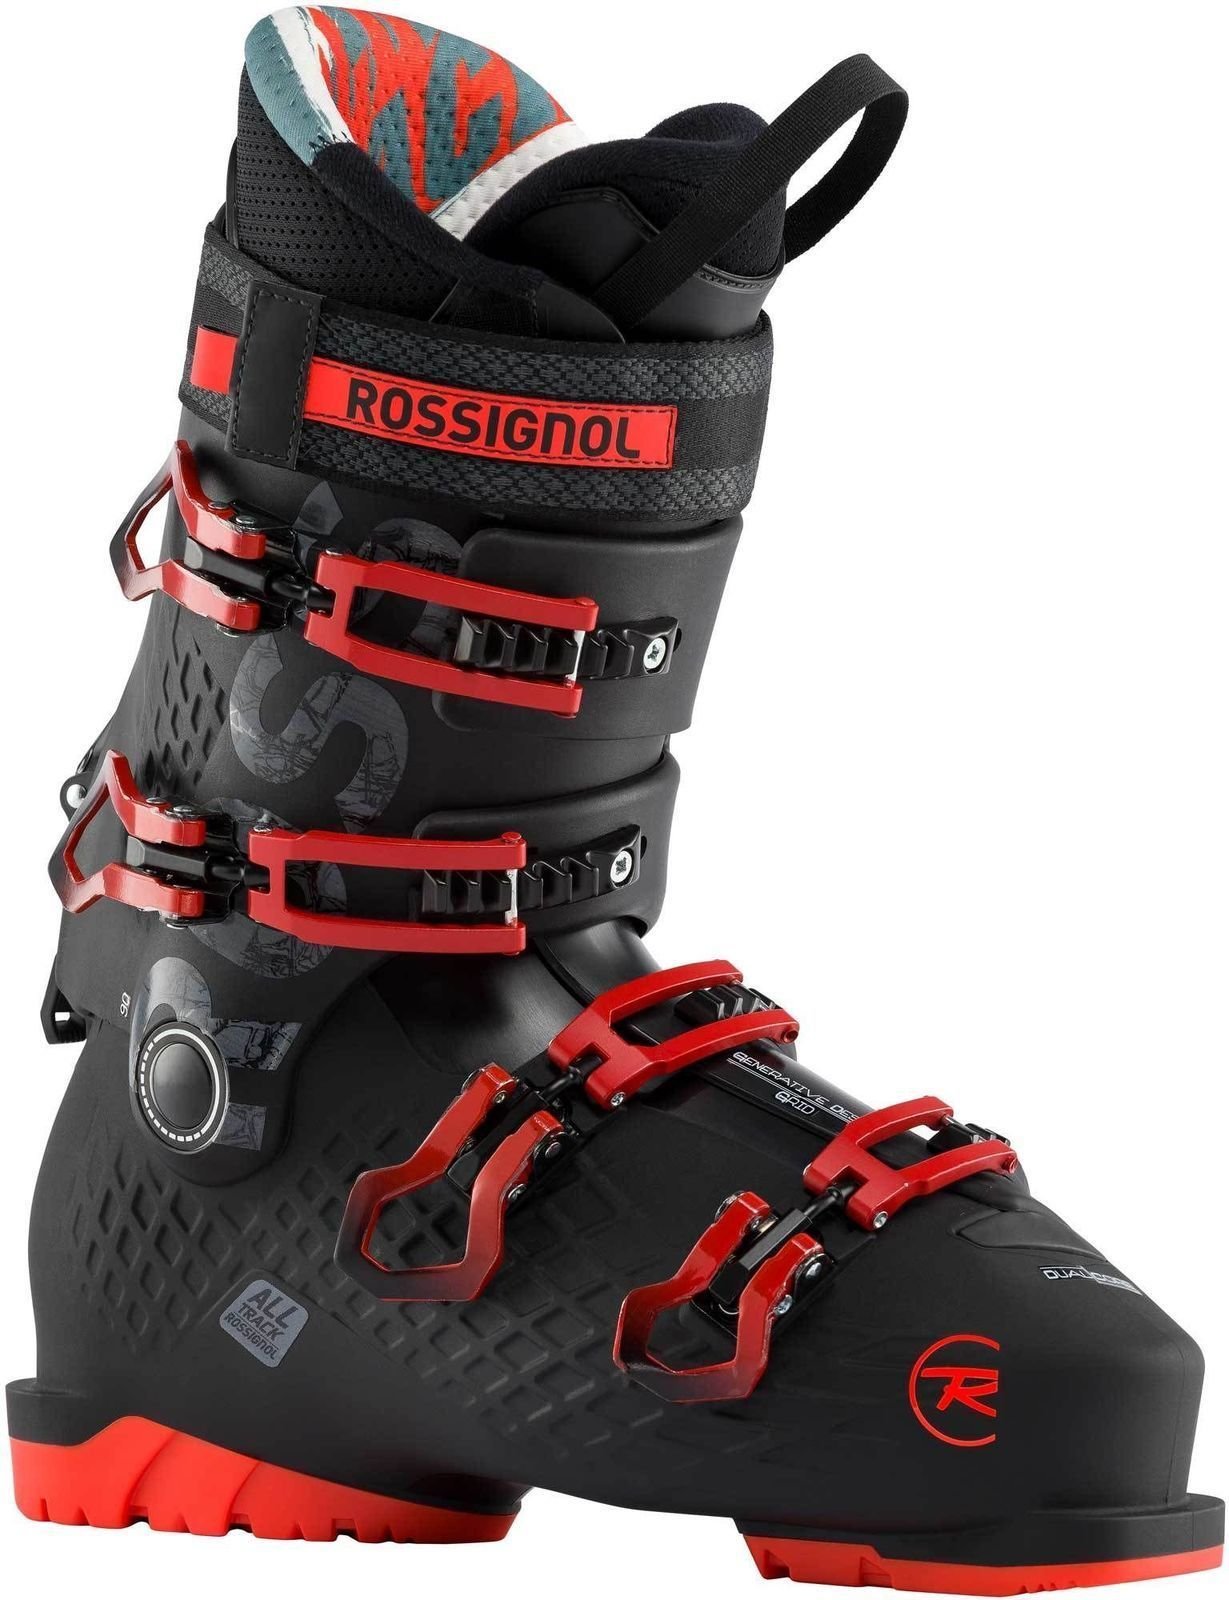 Alpin-Skischuhe Rossignol Alltrack Schwarz-Rot 290 Alpin-Skischuhe